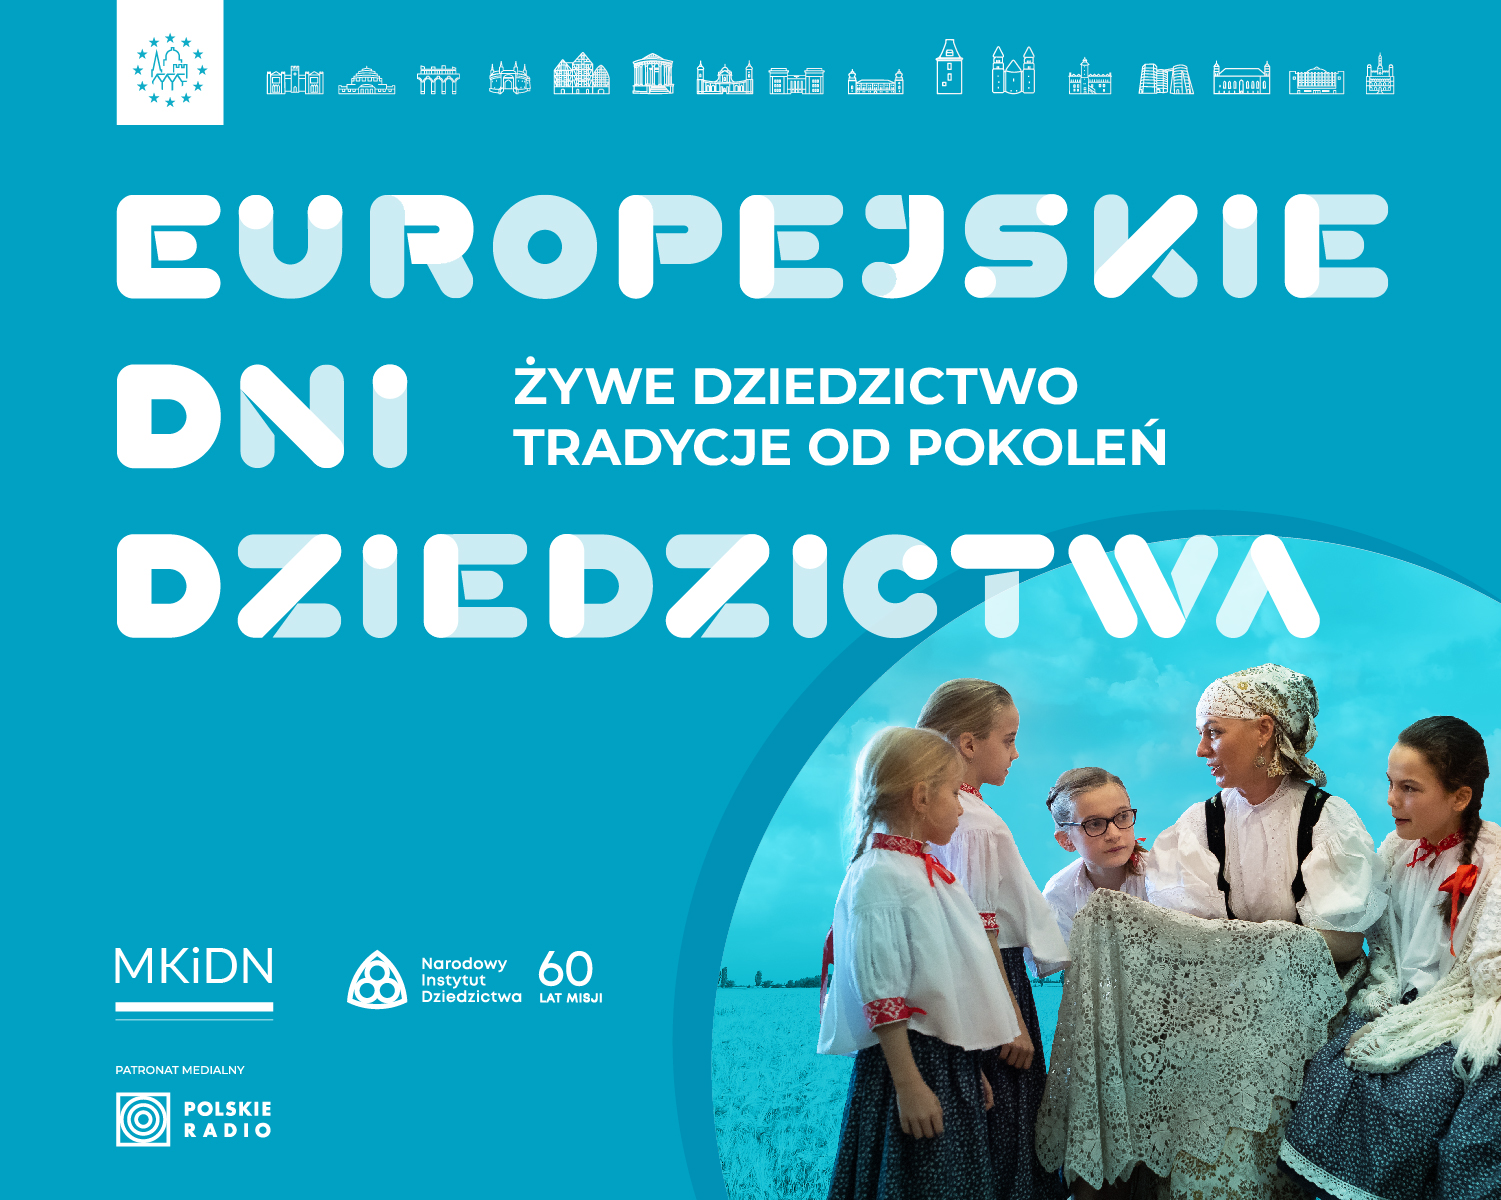 European Heritage Days Poland